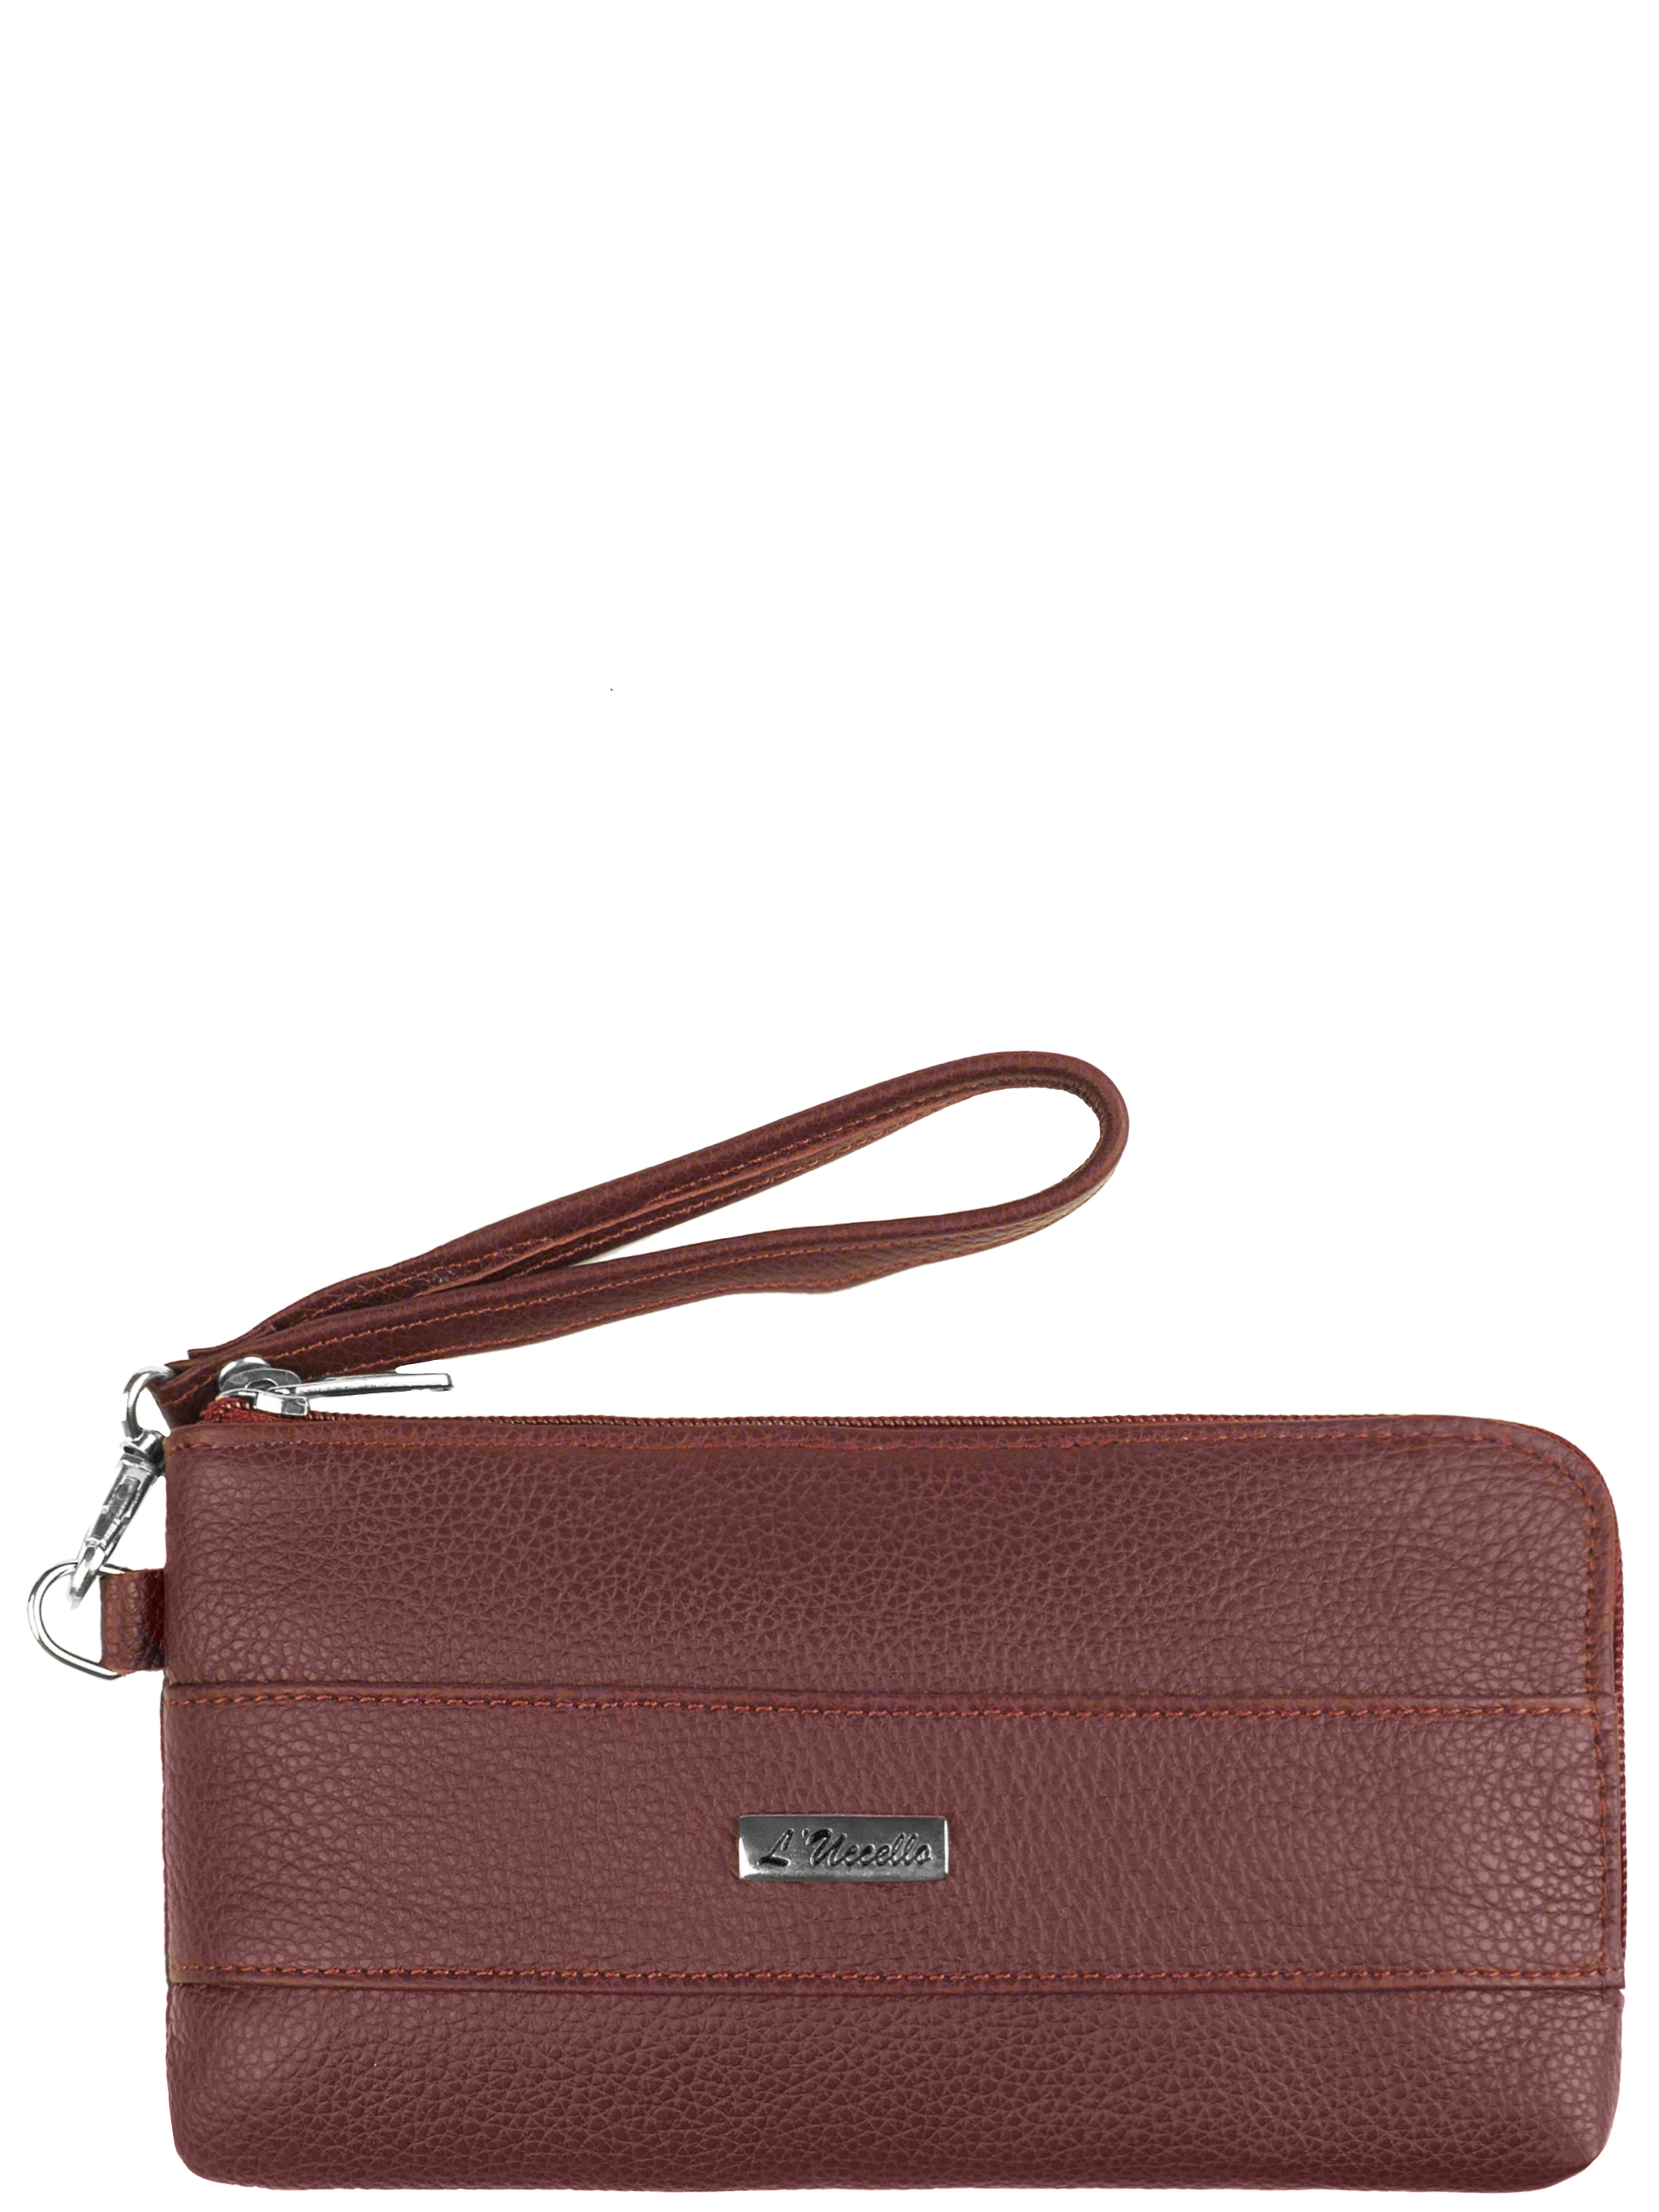 Комплект (кошелек+сумка) женский L'Uccello 1544, бордовый